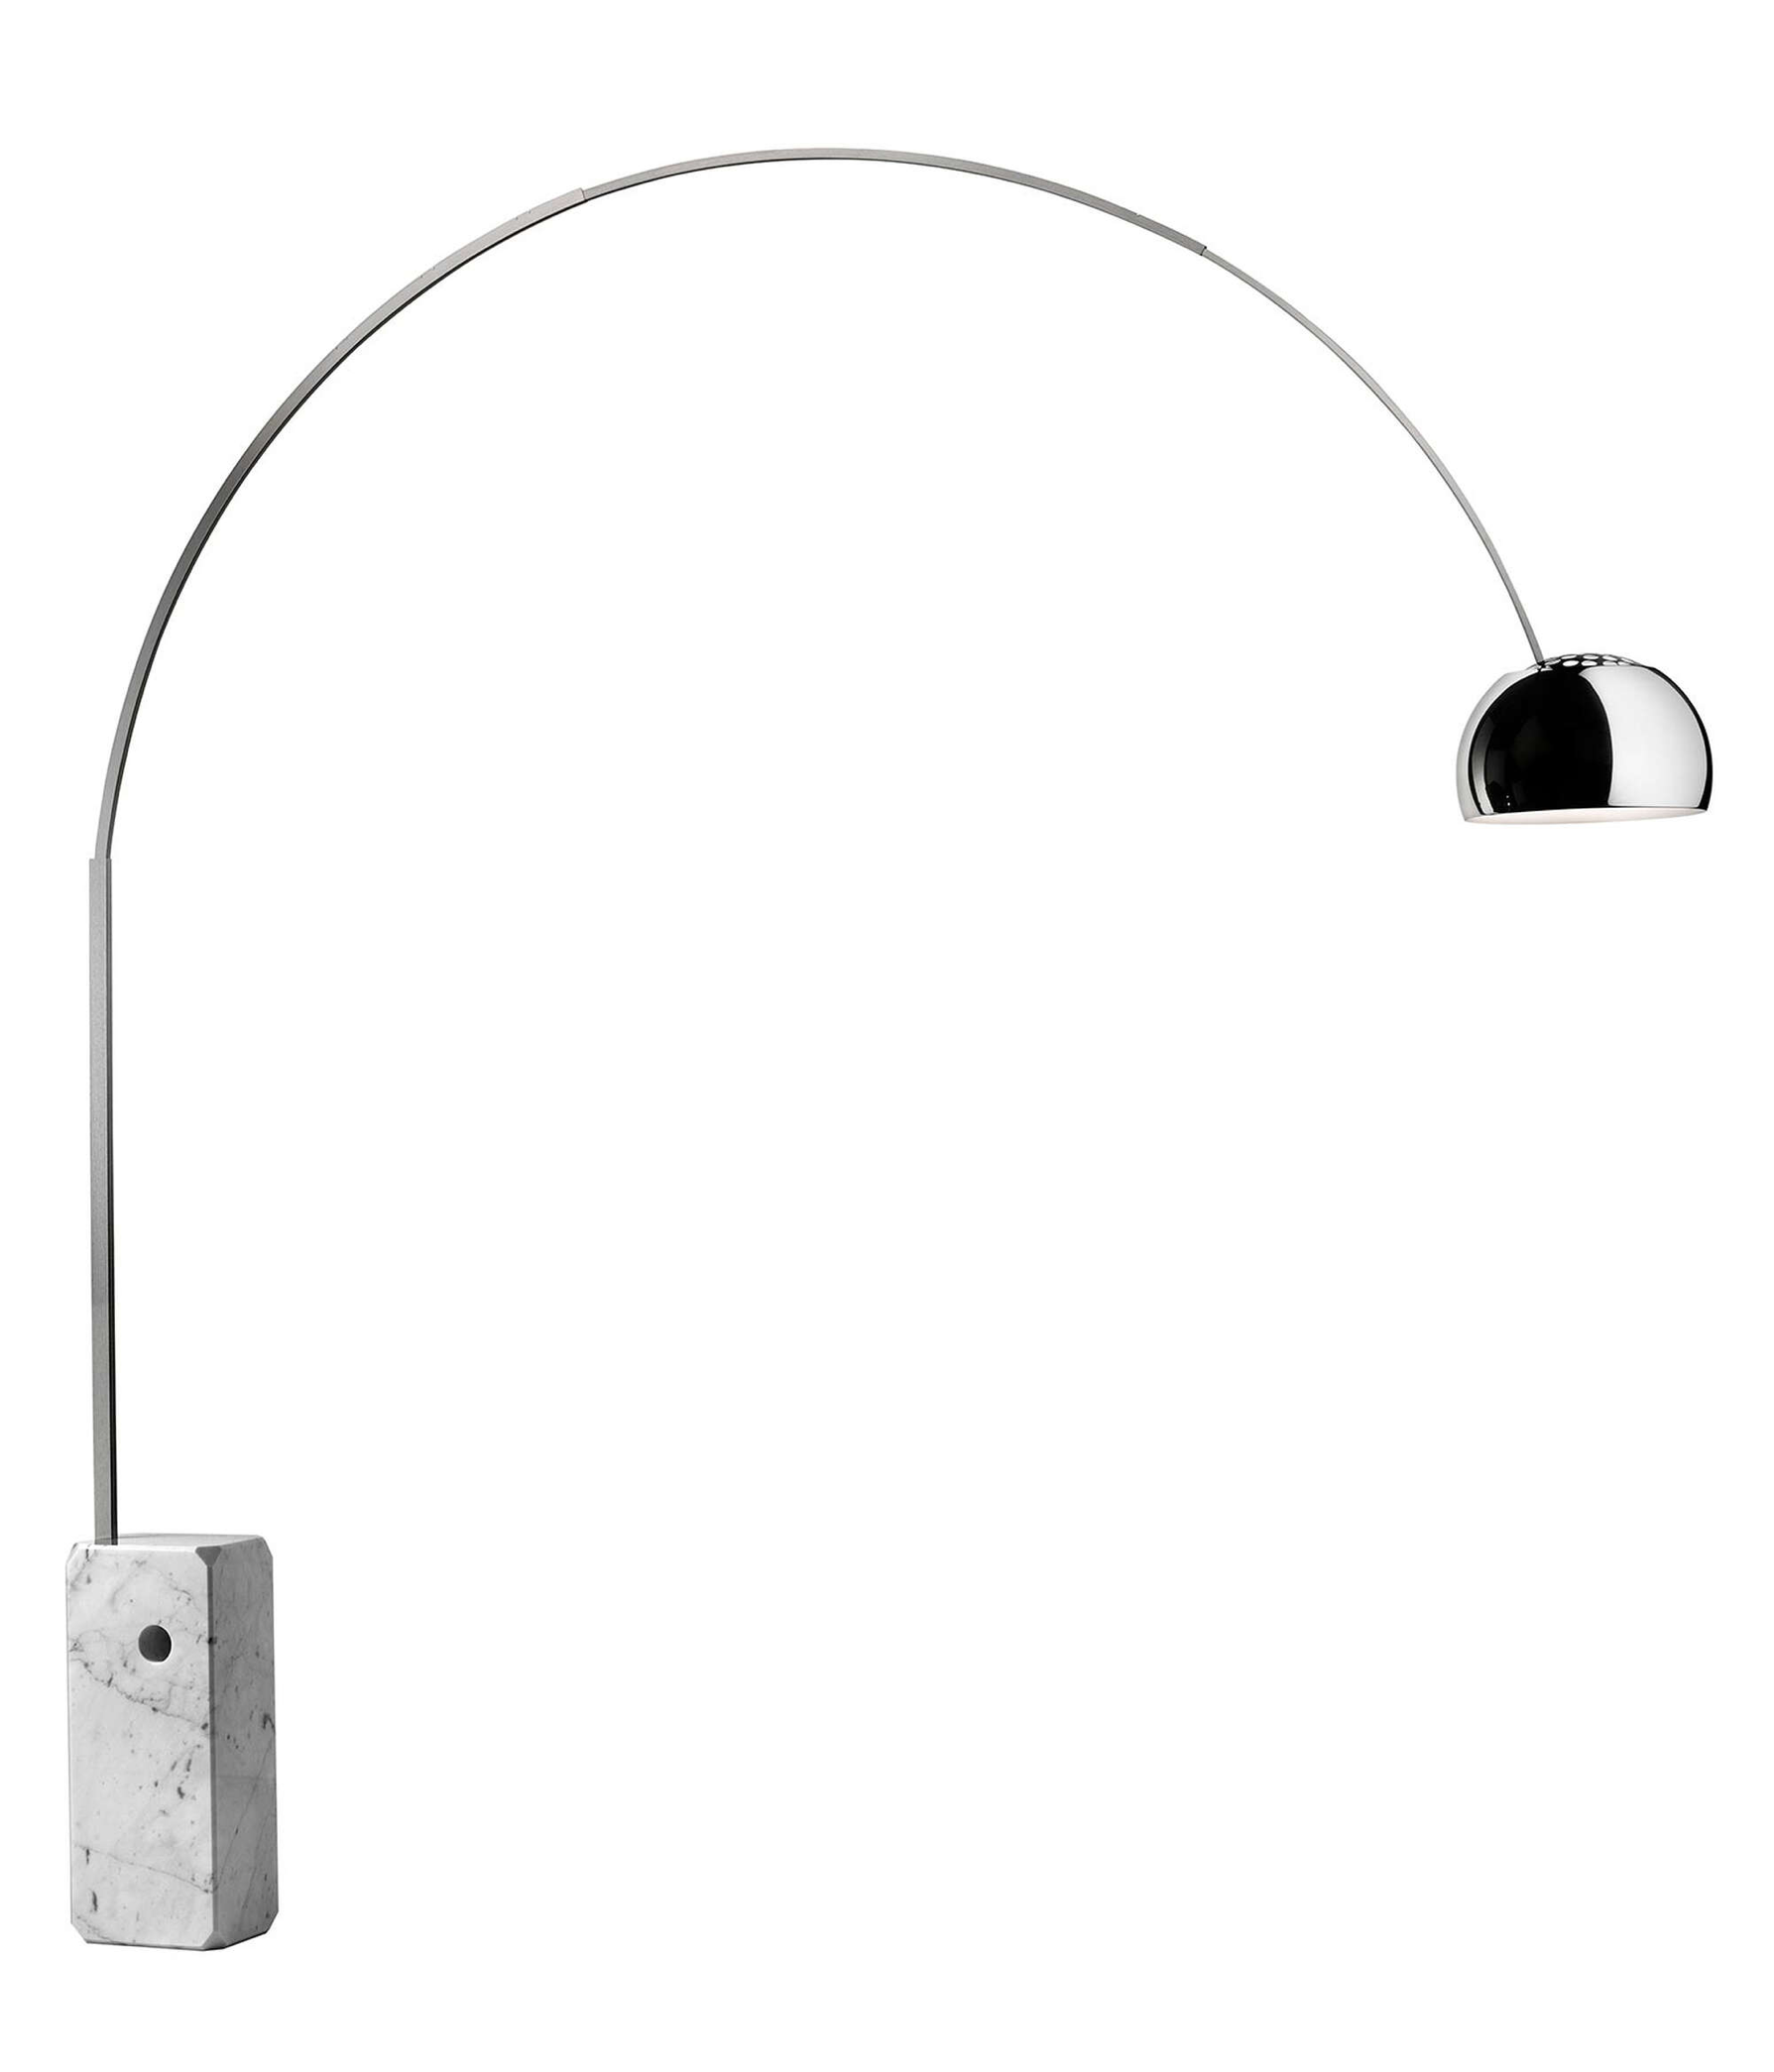 Studio82.ro - Equipment Rental - FLOS Arco Floor Lamp